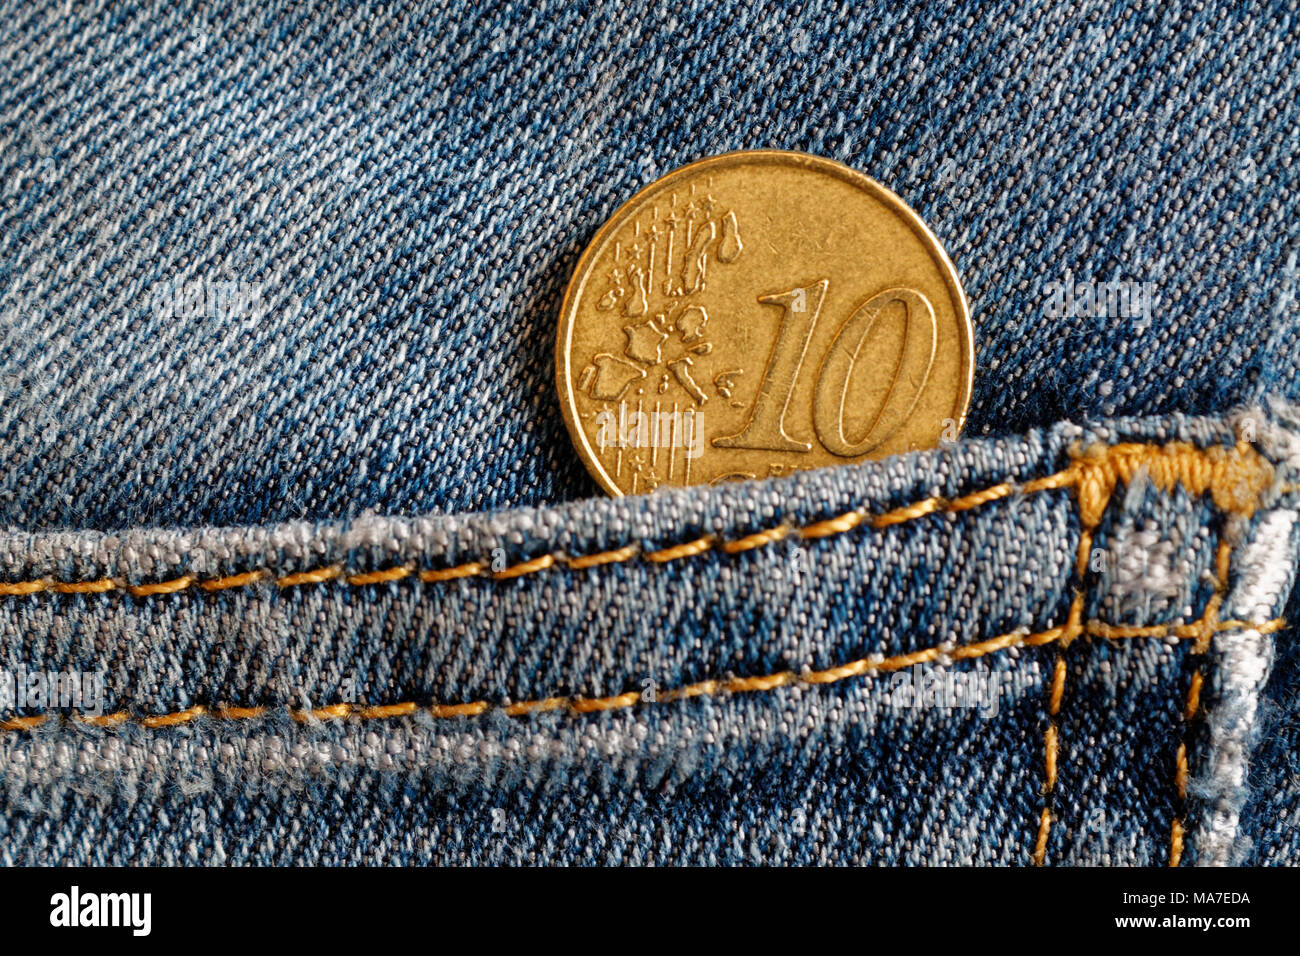 Monedas de euro con una denominación de 10 céntimos de euro en el bolsillo de los pantalones vaqueros azules desgastados Foto de stock